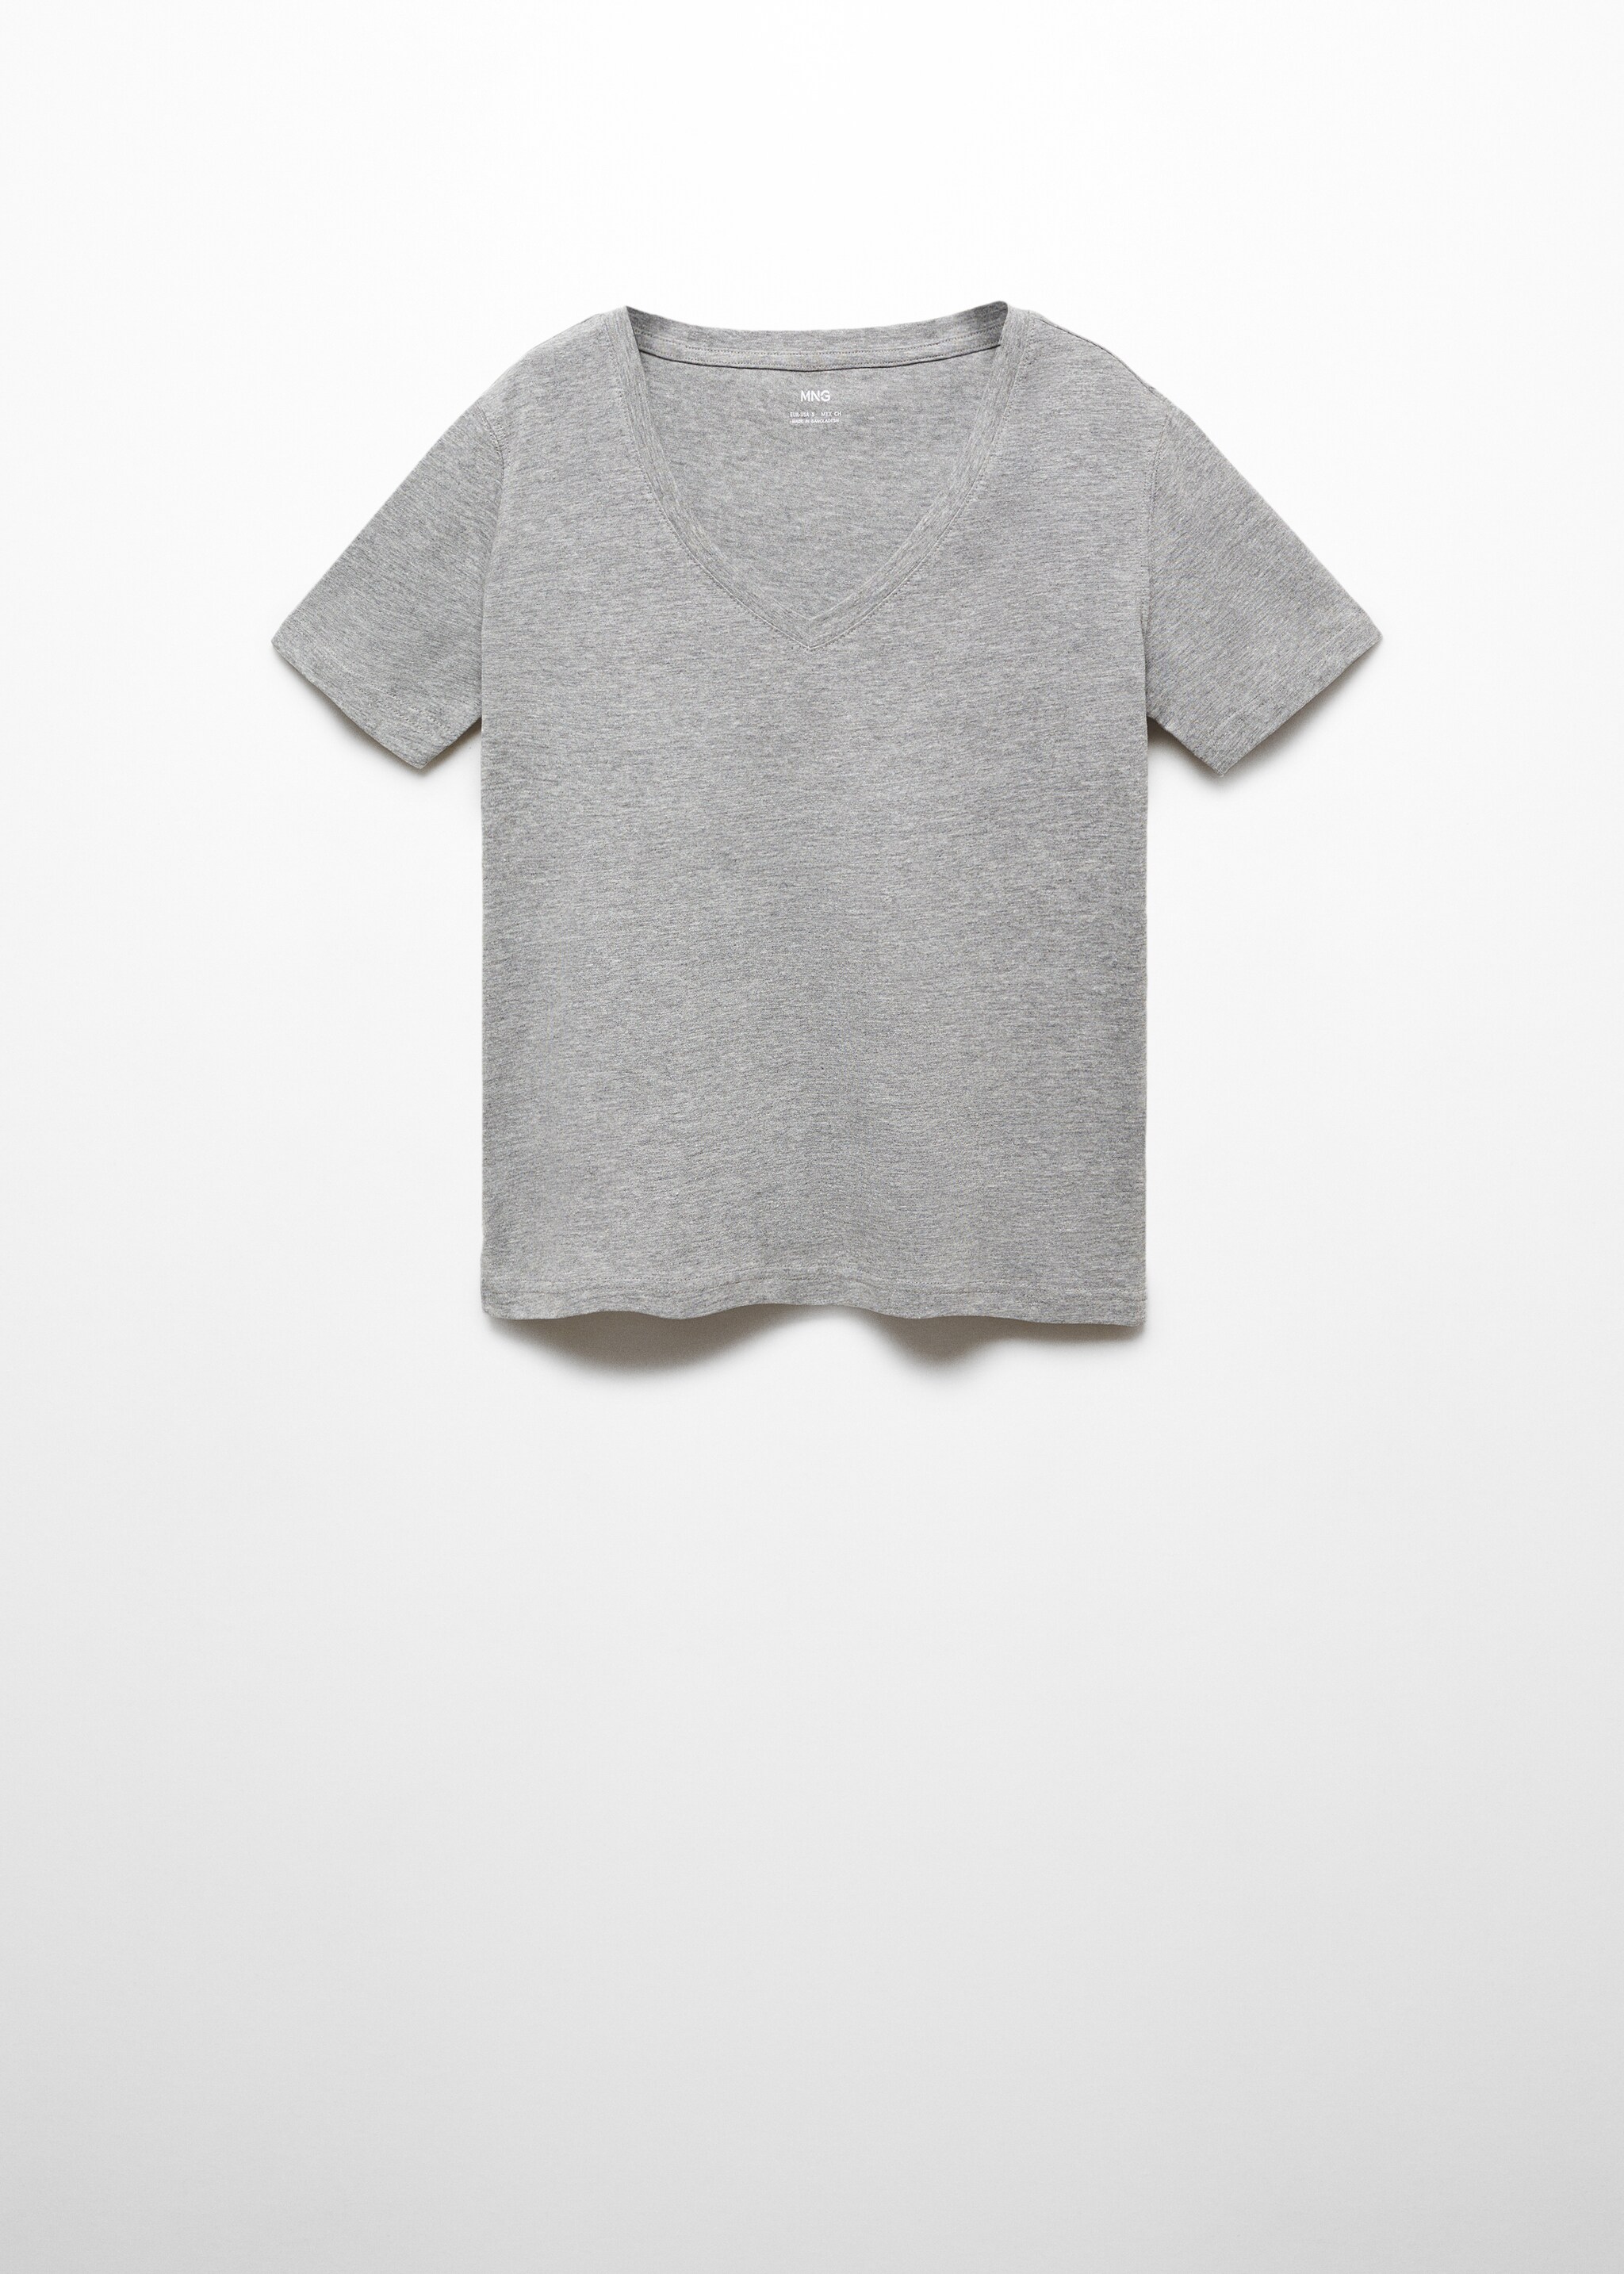 Camiseta cuello pico 100% algodón - Artículo sin modelo